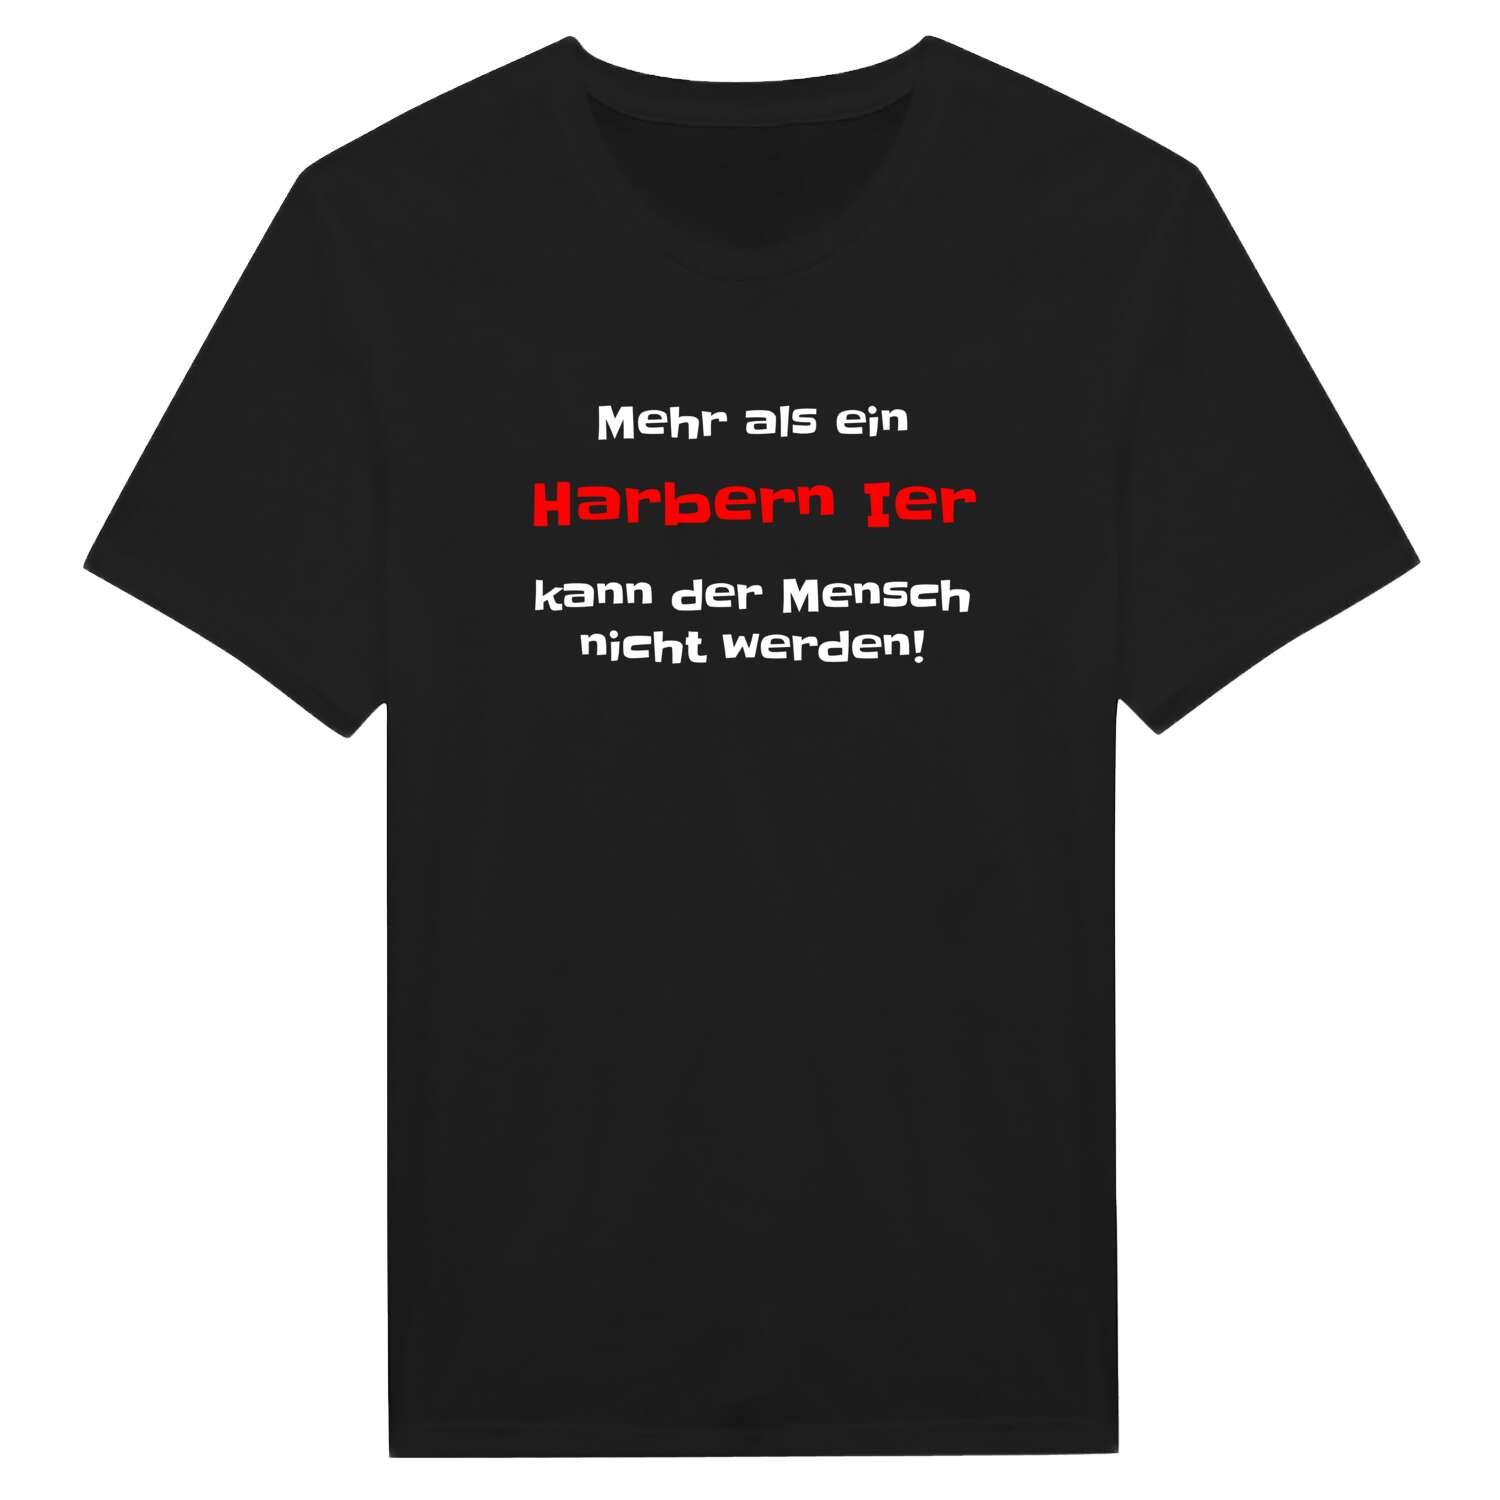 Harbern I T-Shirt »Mehr als ein«